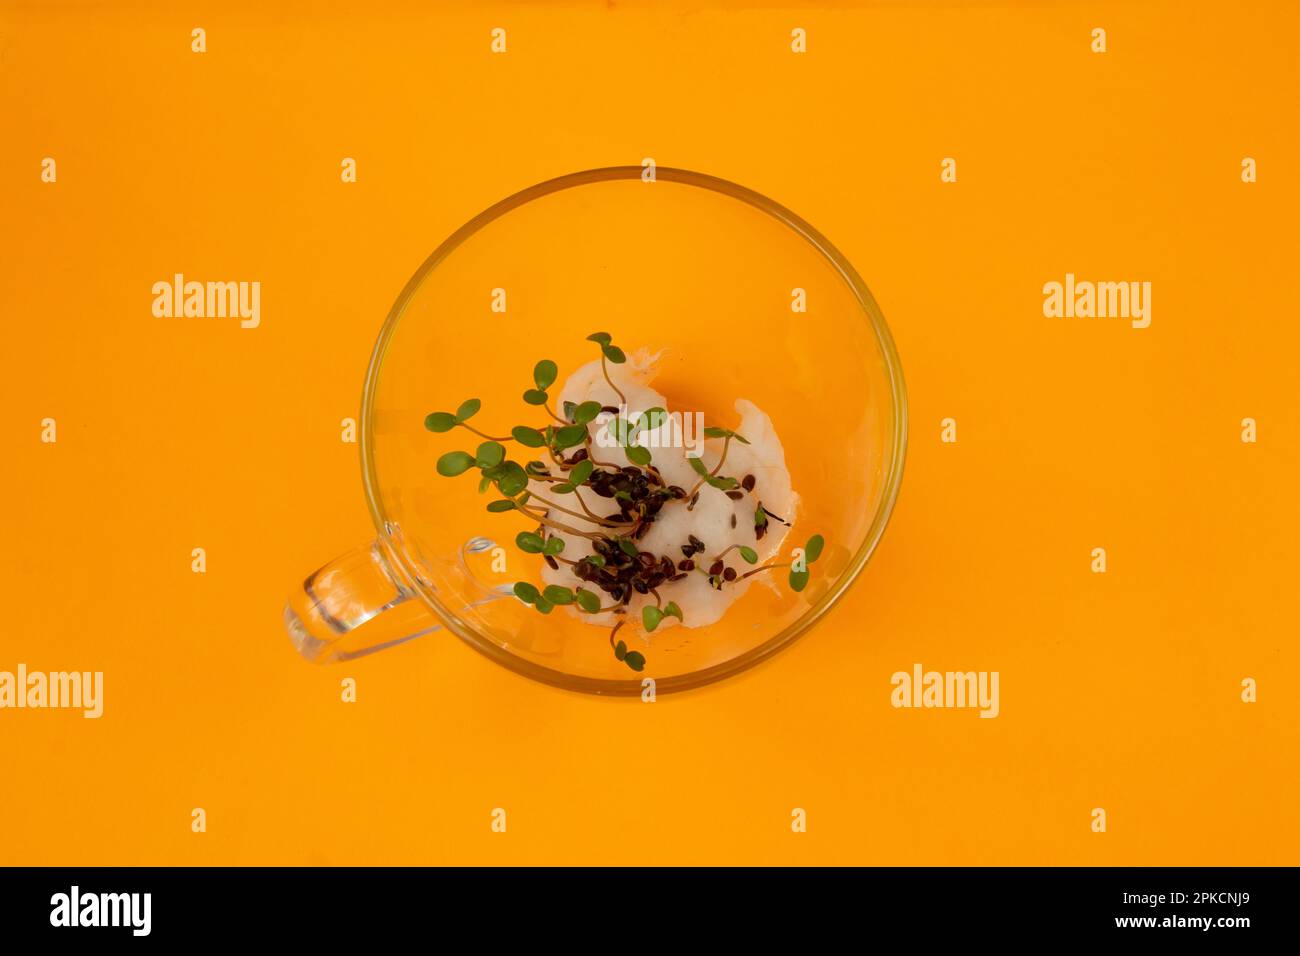 les graines de couleur germées se trouvent dans une tasse de verre sur une orange Banque D'Images